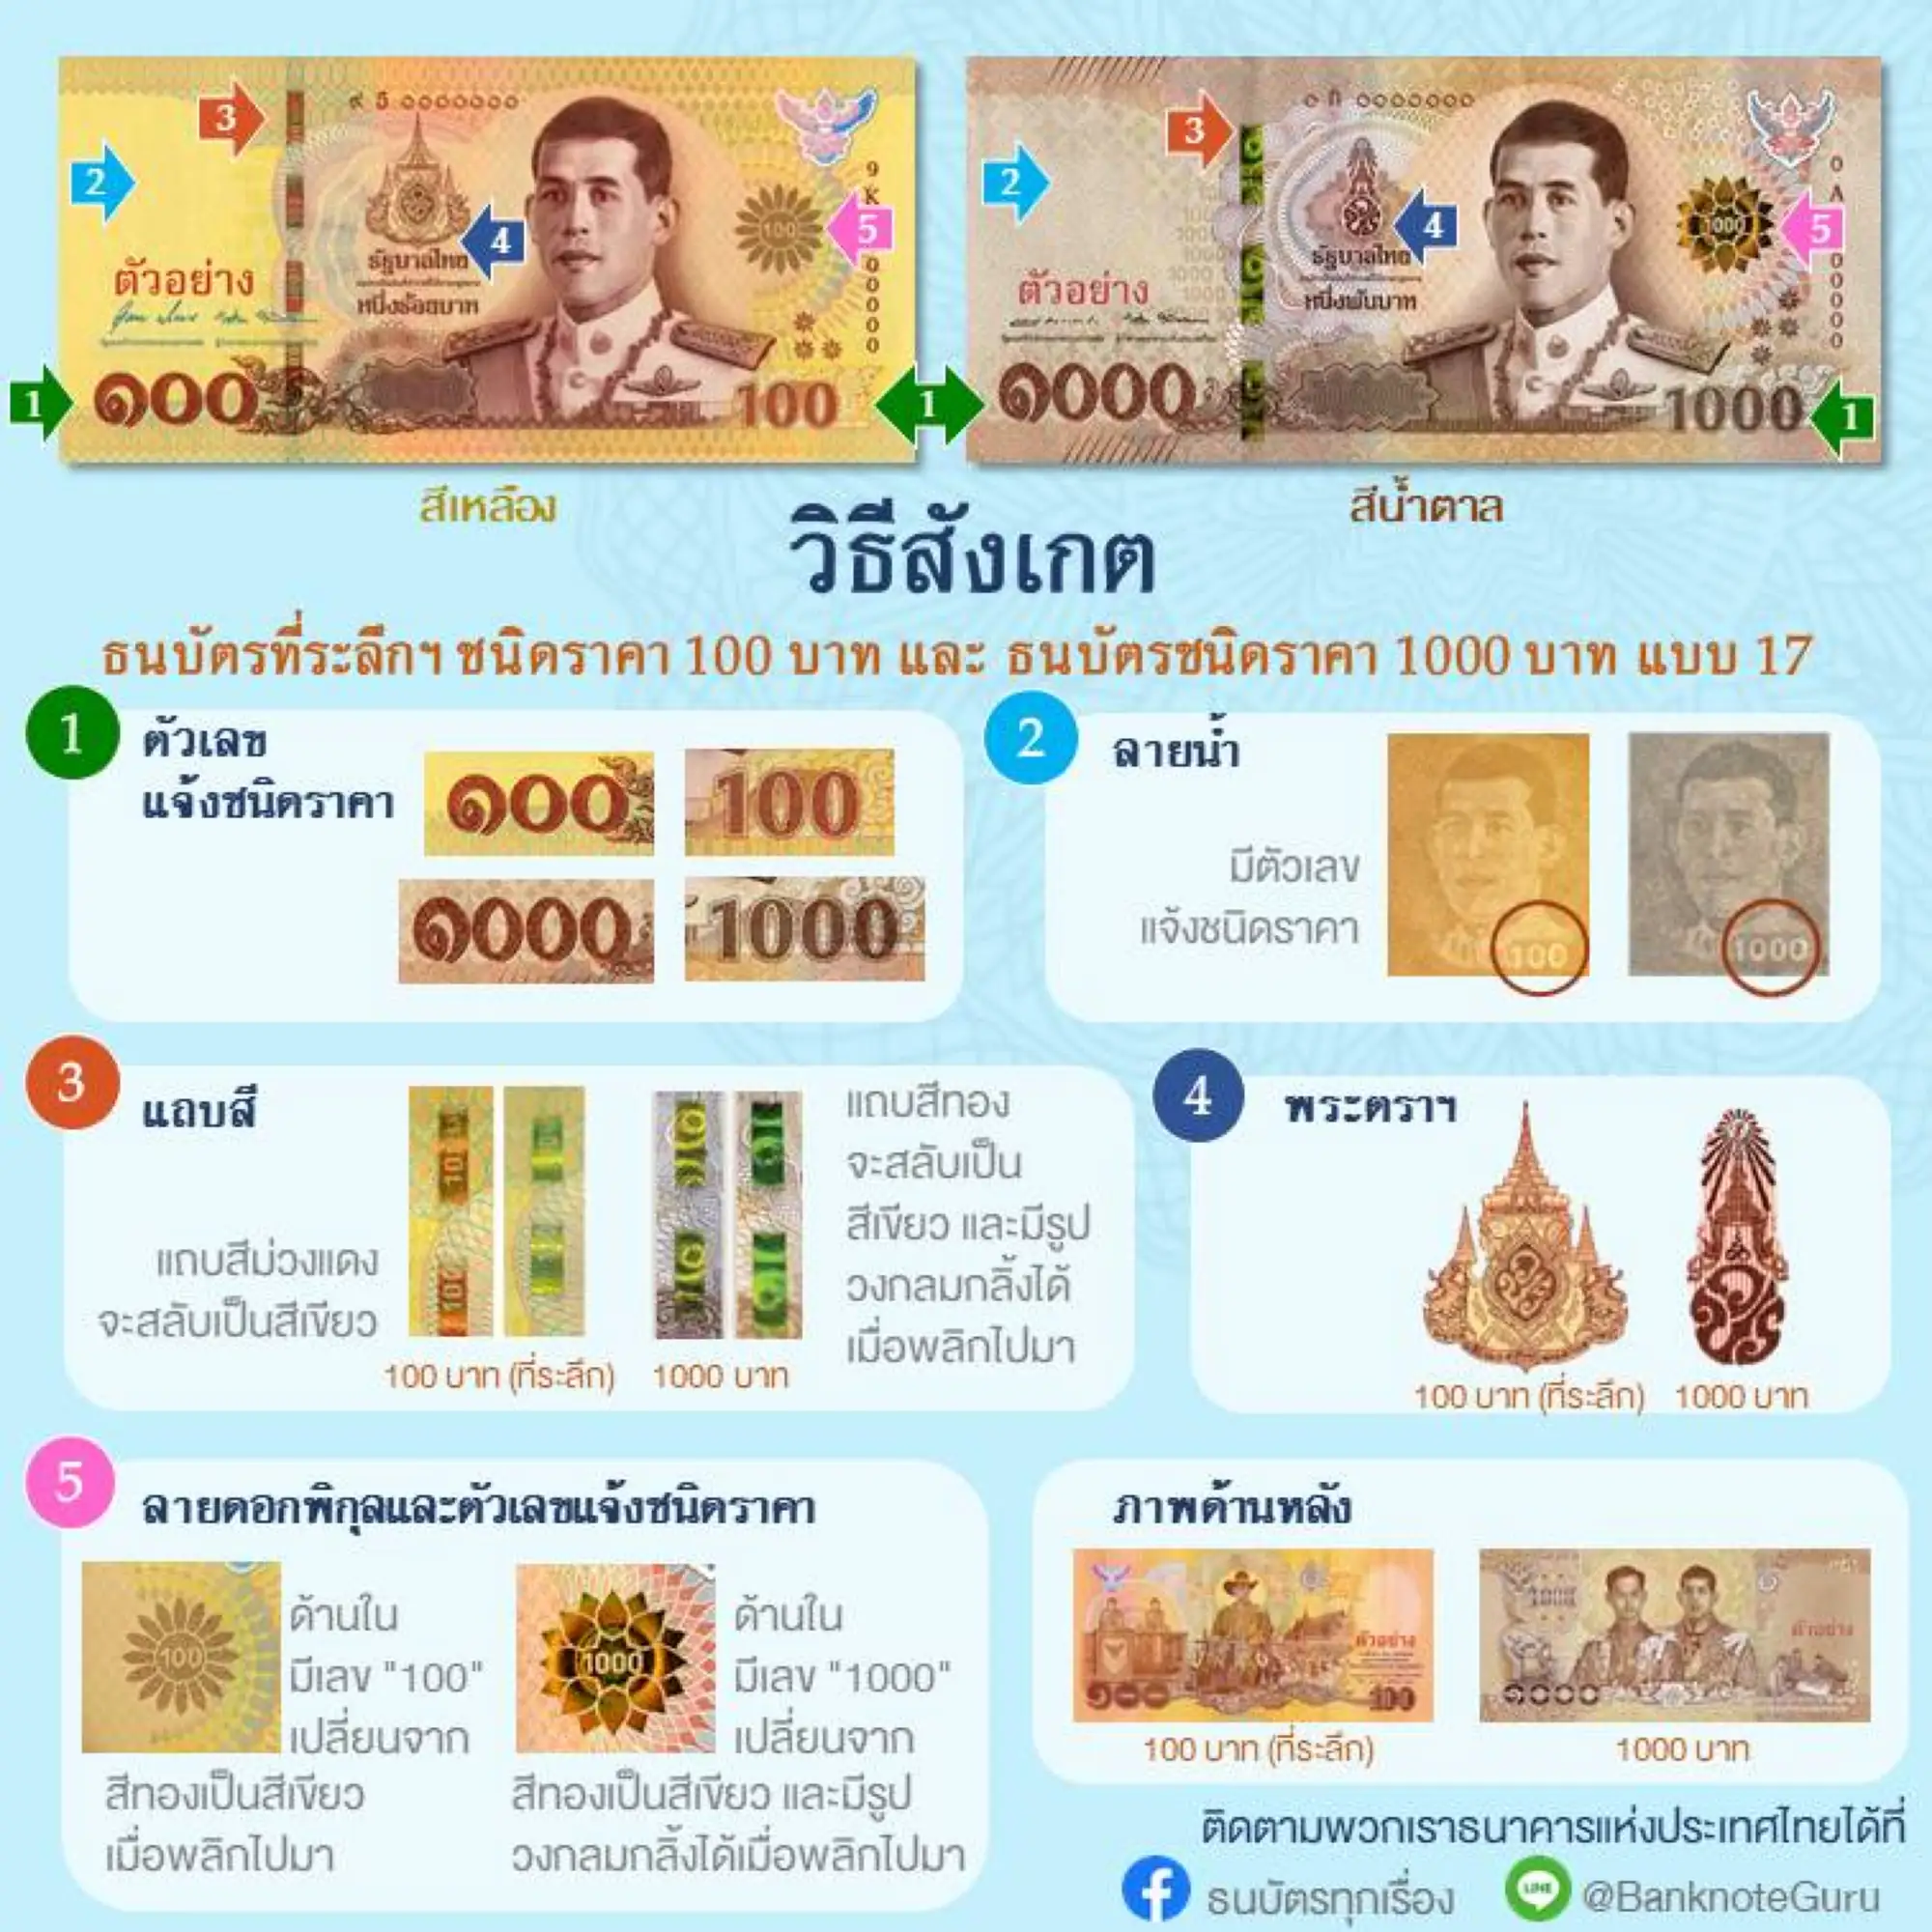 泰国中央银行列出了5项新版100泰铢纪念币和旧版1000泰铢纸币的差异（图片来源：泰国中央银行官方粉专）